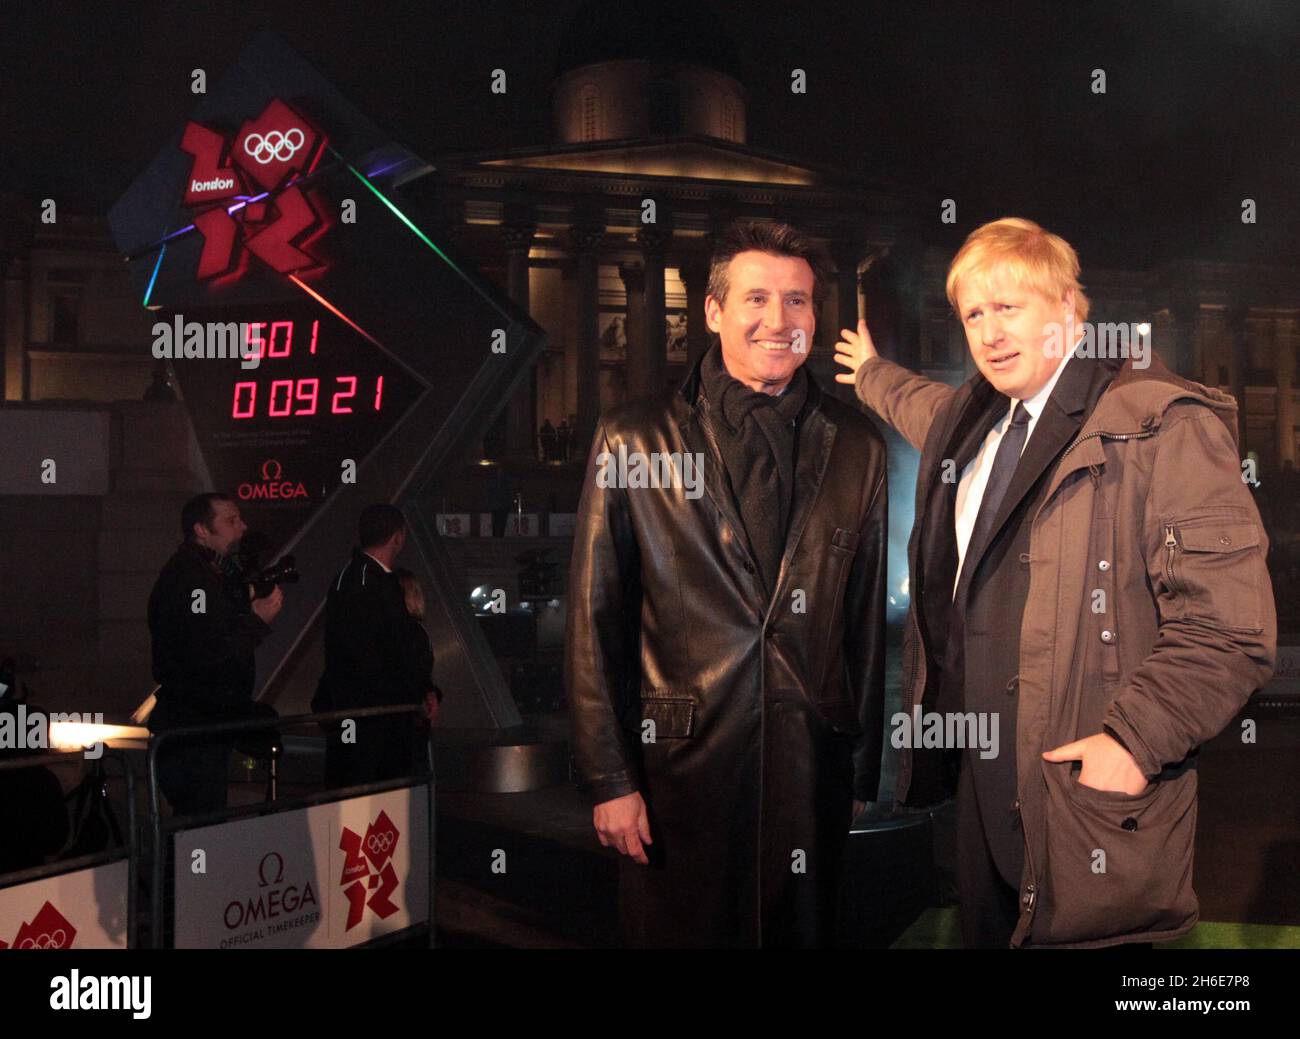 Der Vorsitzende der LOCOG, Sebastian Coe, und der Bürgermeister von London, Boris Johnson, bei der Einführung der offiziellen Countdown-Uhr OMEGA London 2012 und anlässlich der 500-tägigen Eröffnungsfeier der Spiele am Trafalgar Square in London Stockfoto